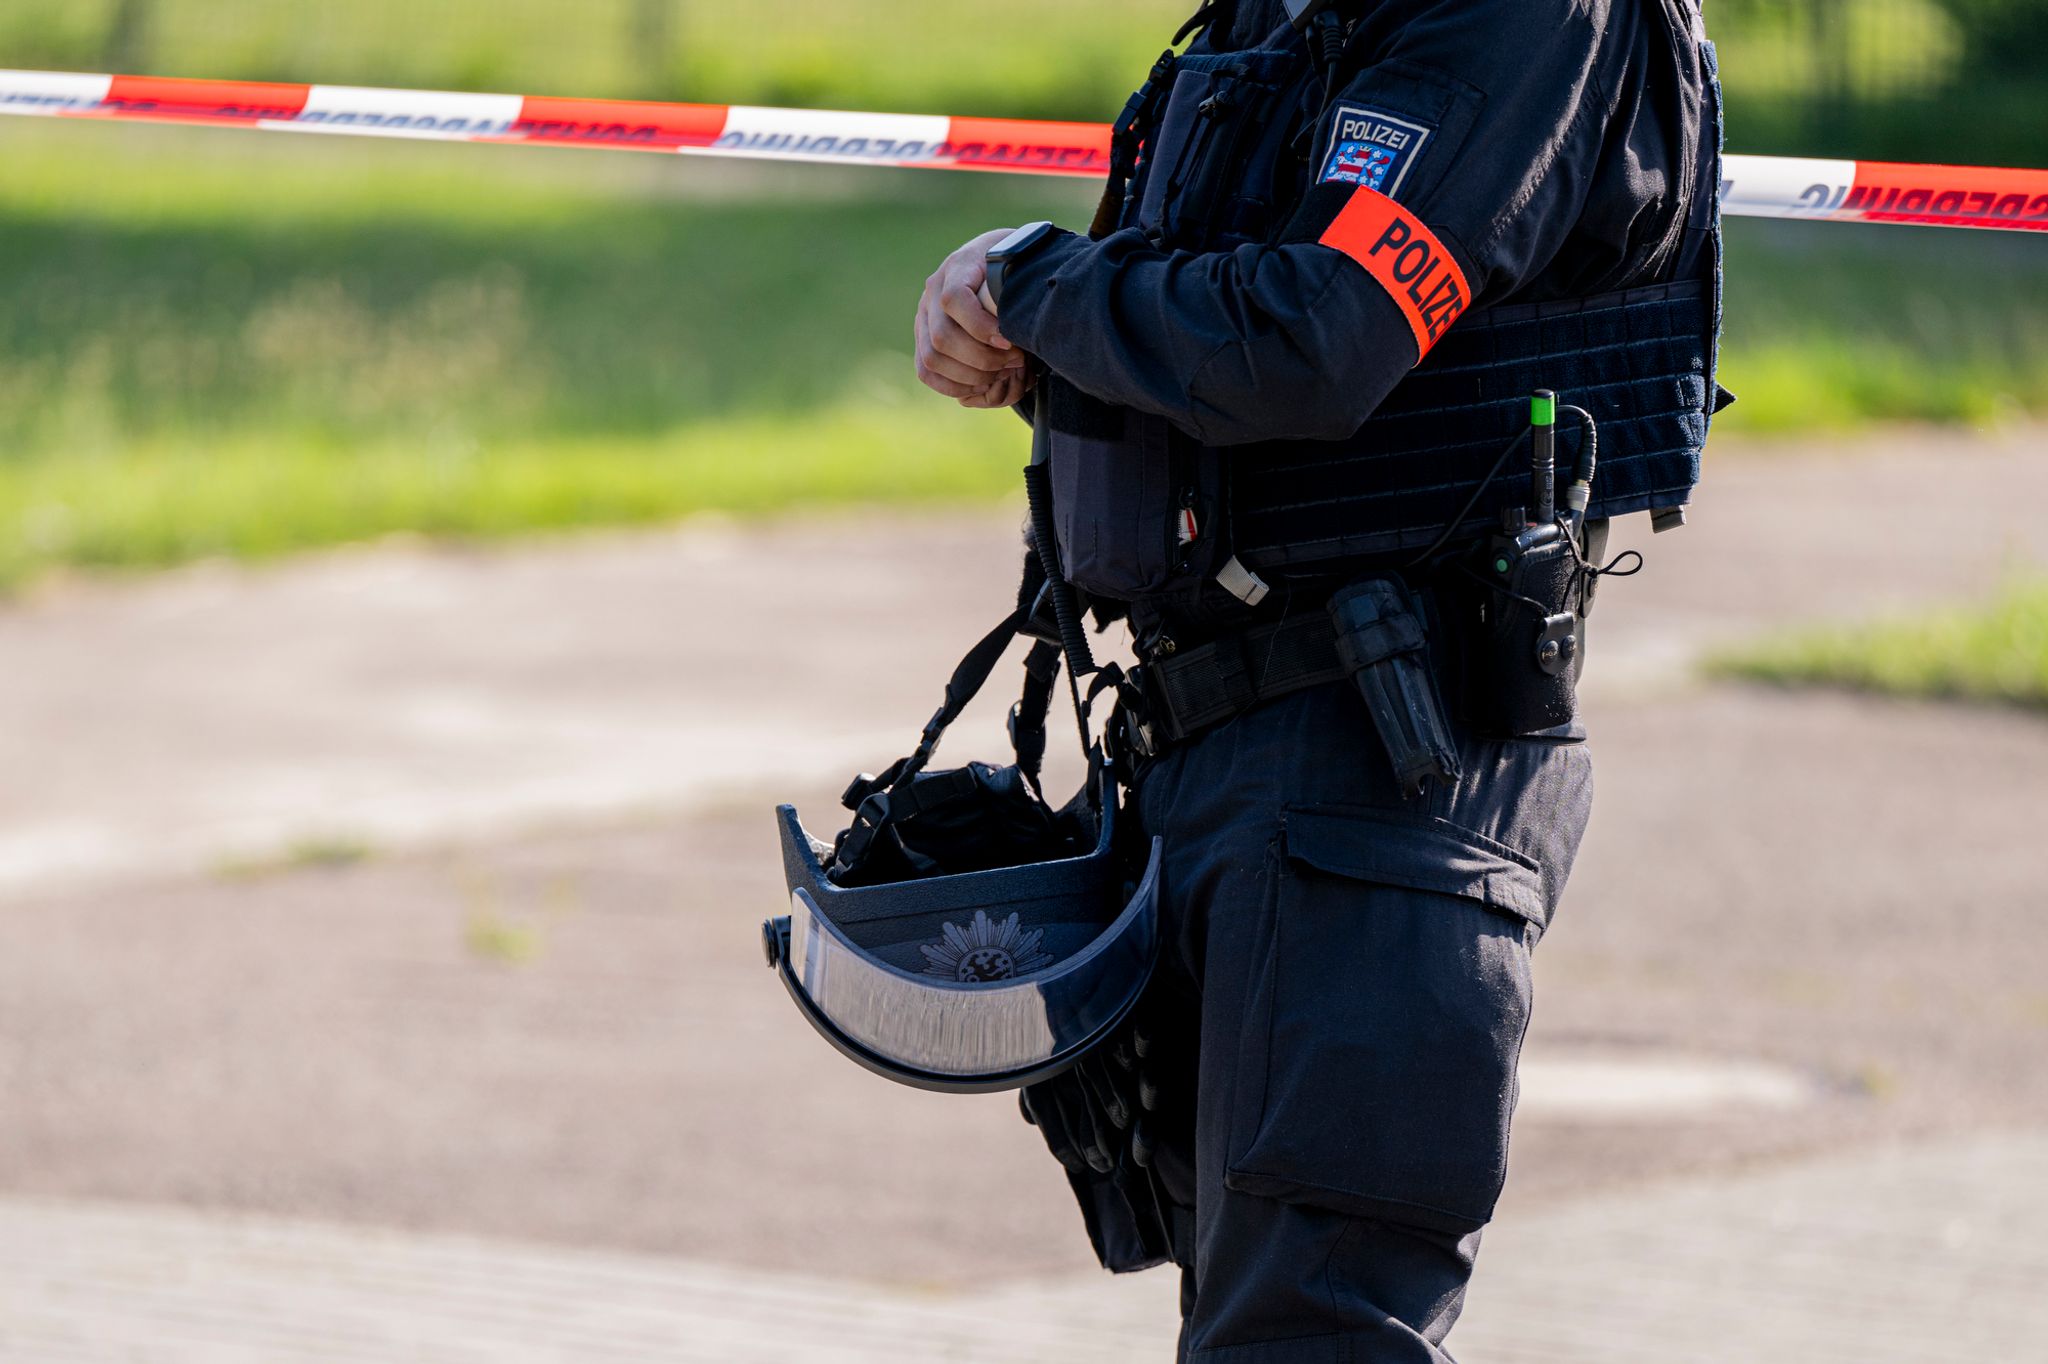 Mann in Erfurt erschossen 
Nach mutmalichem Mord in Erfurt: Ermittlungen laufen weiter. Jacob Schrter/dpa